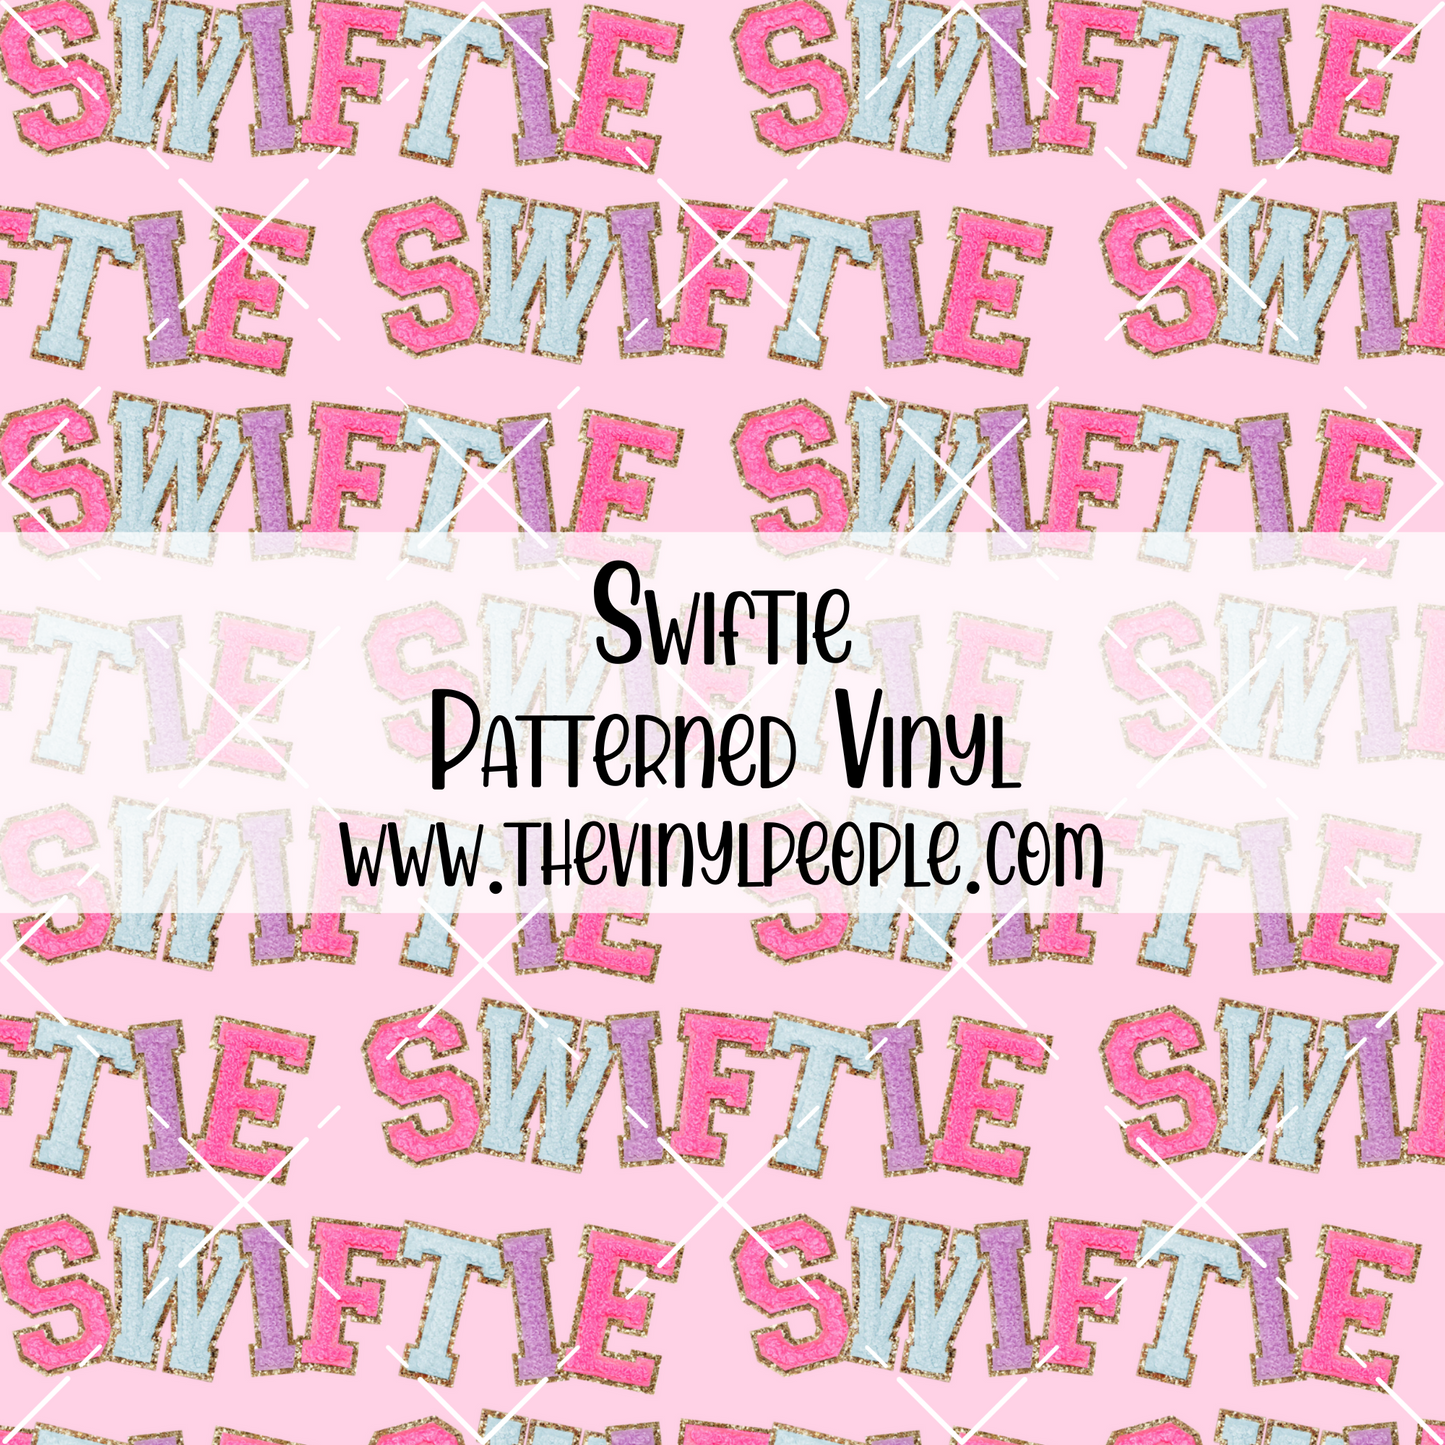 Swiftie Patterned Vinyl